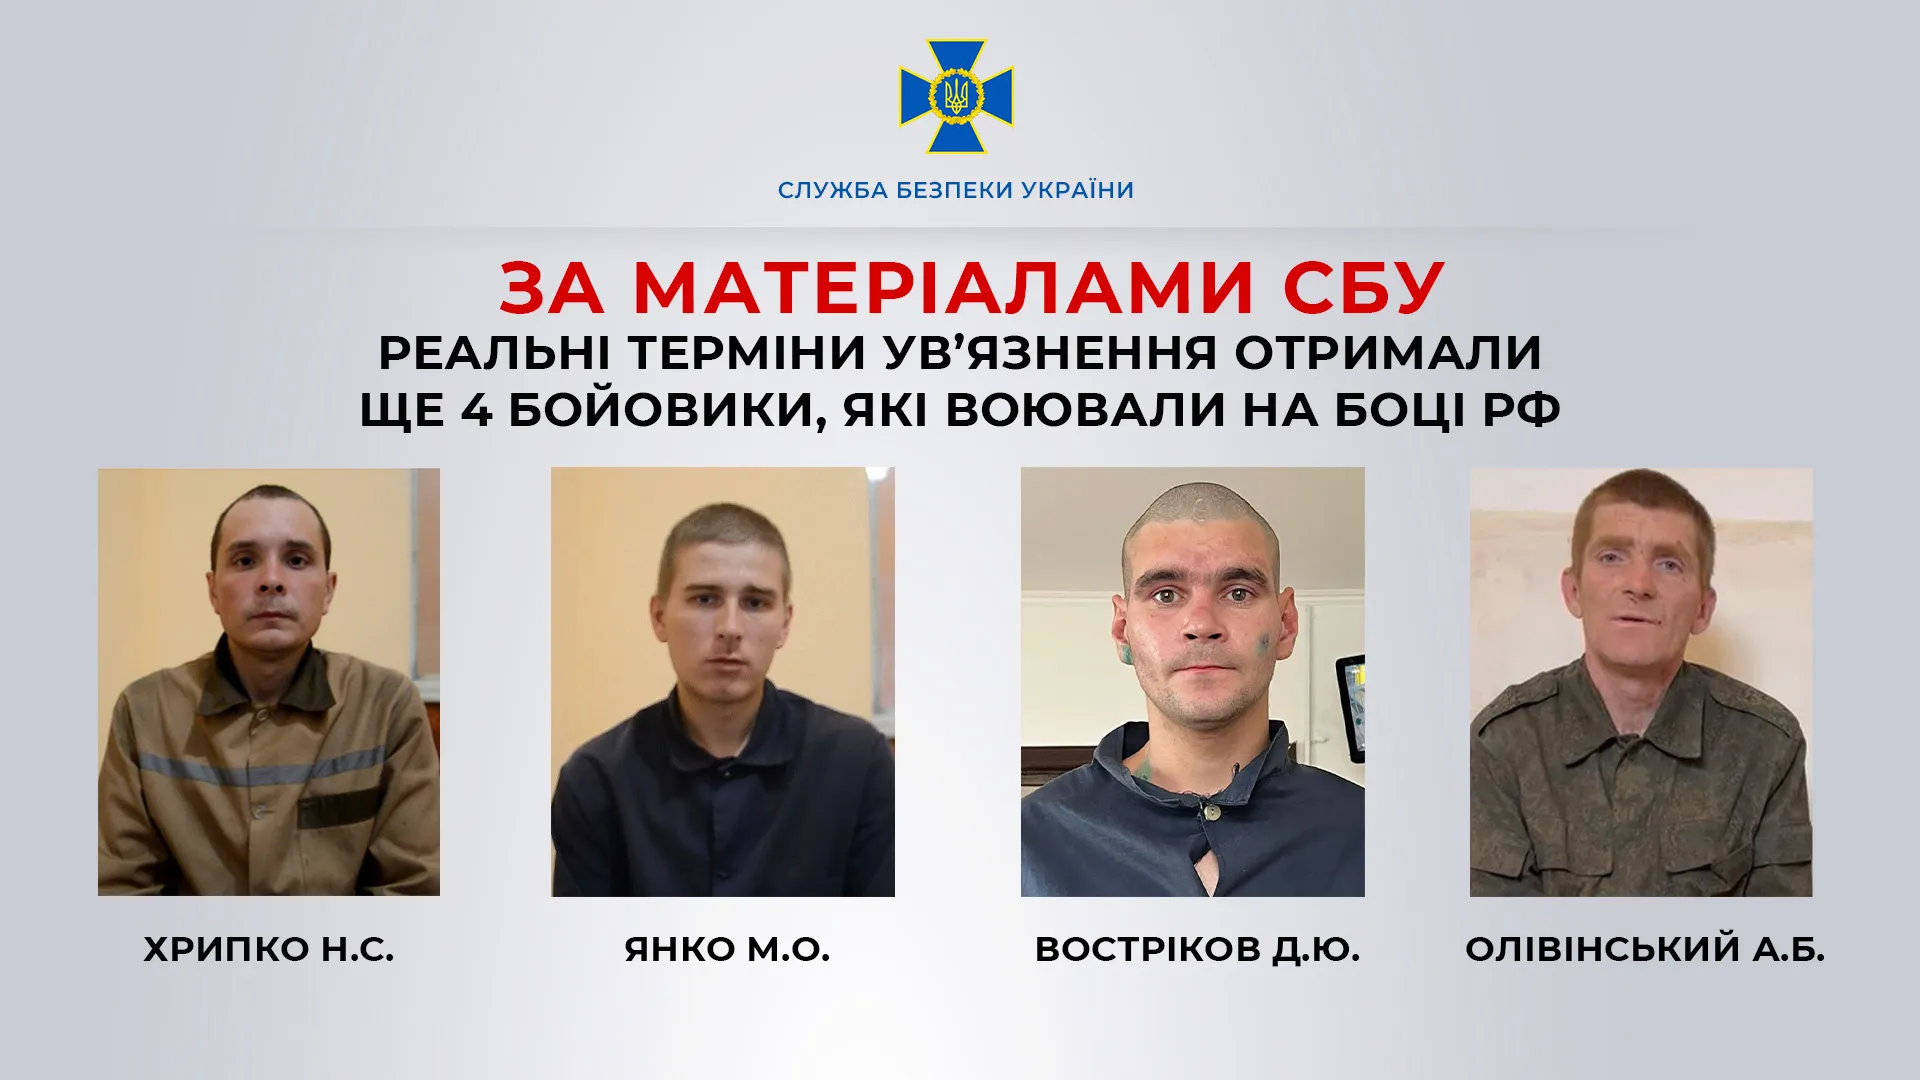 В Украине осудили боевиков